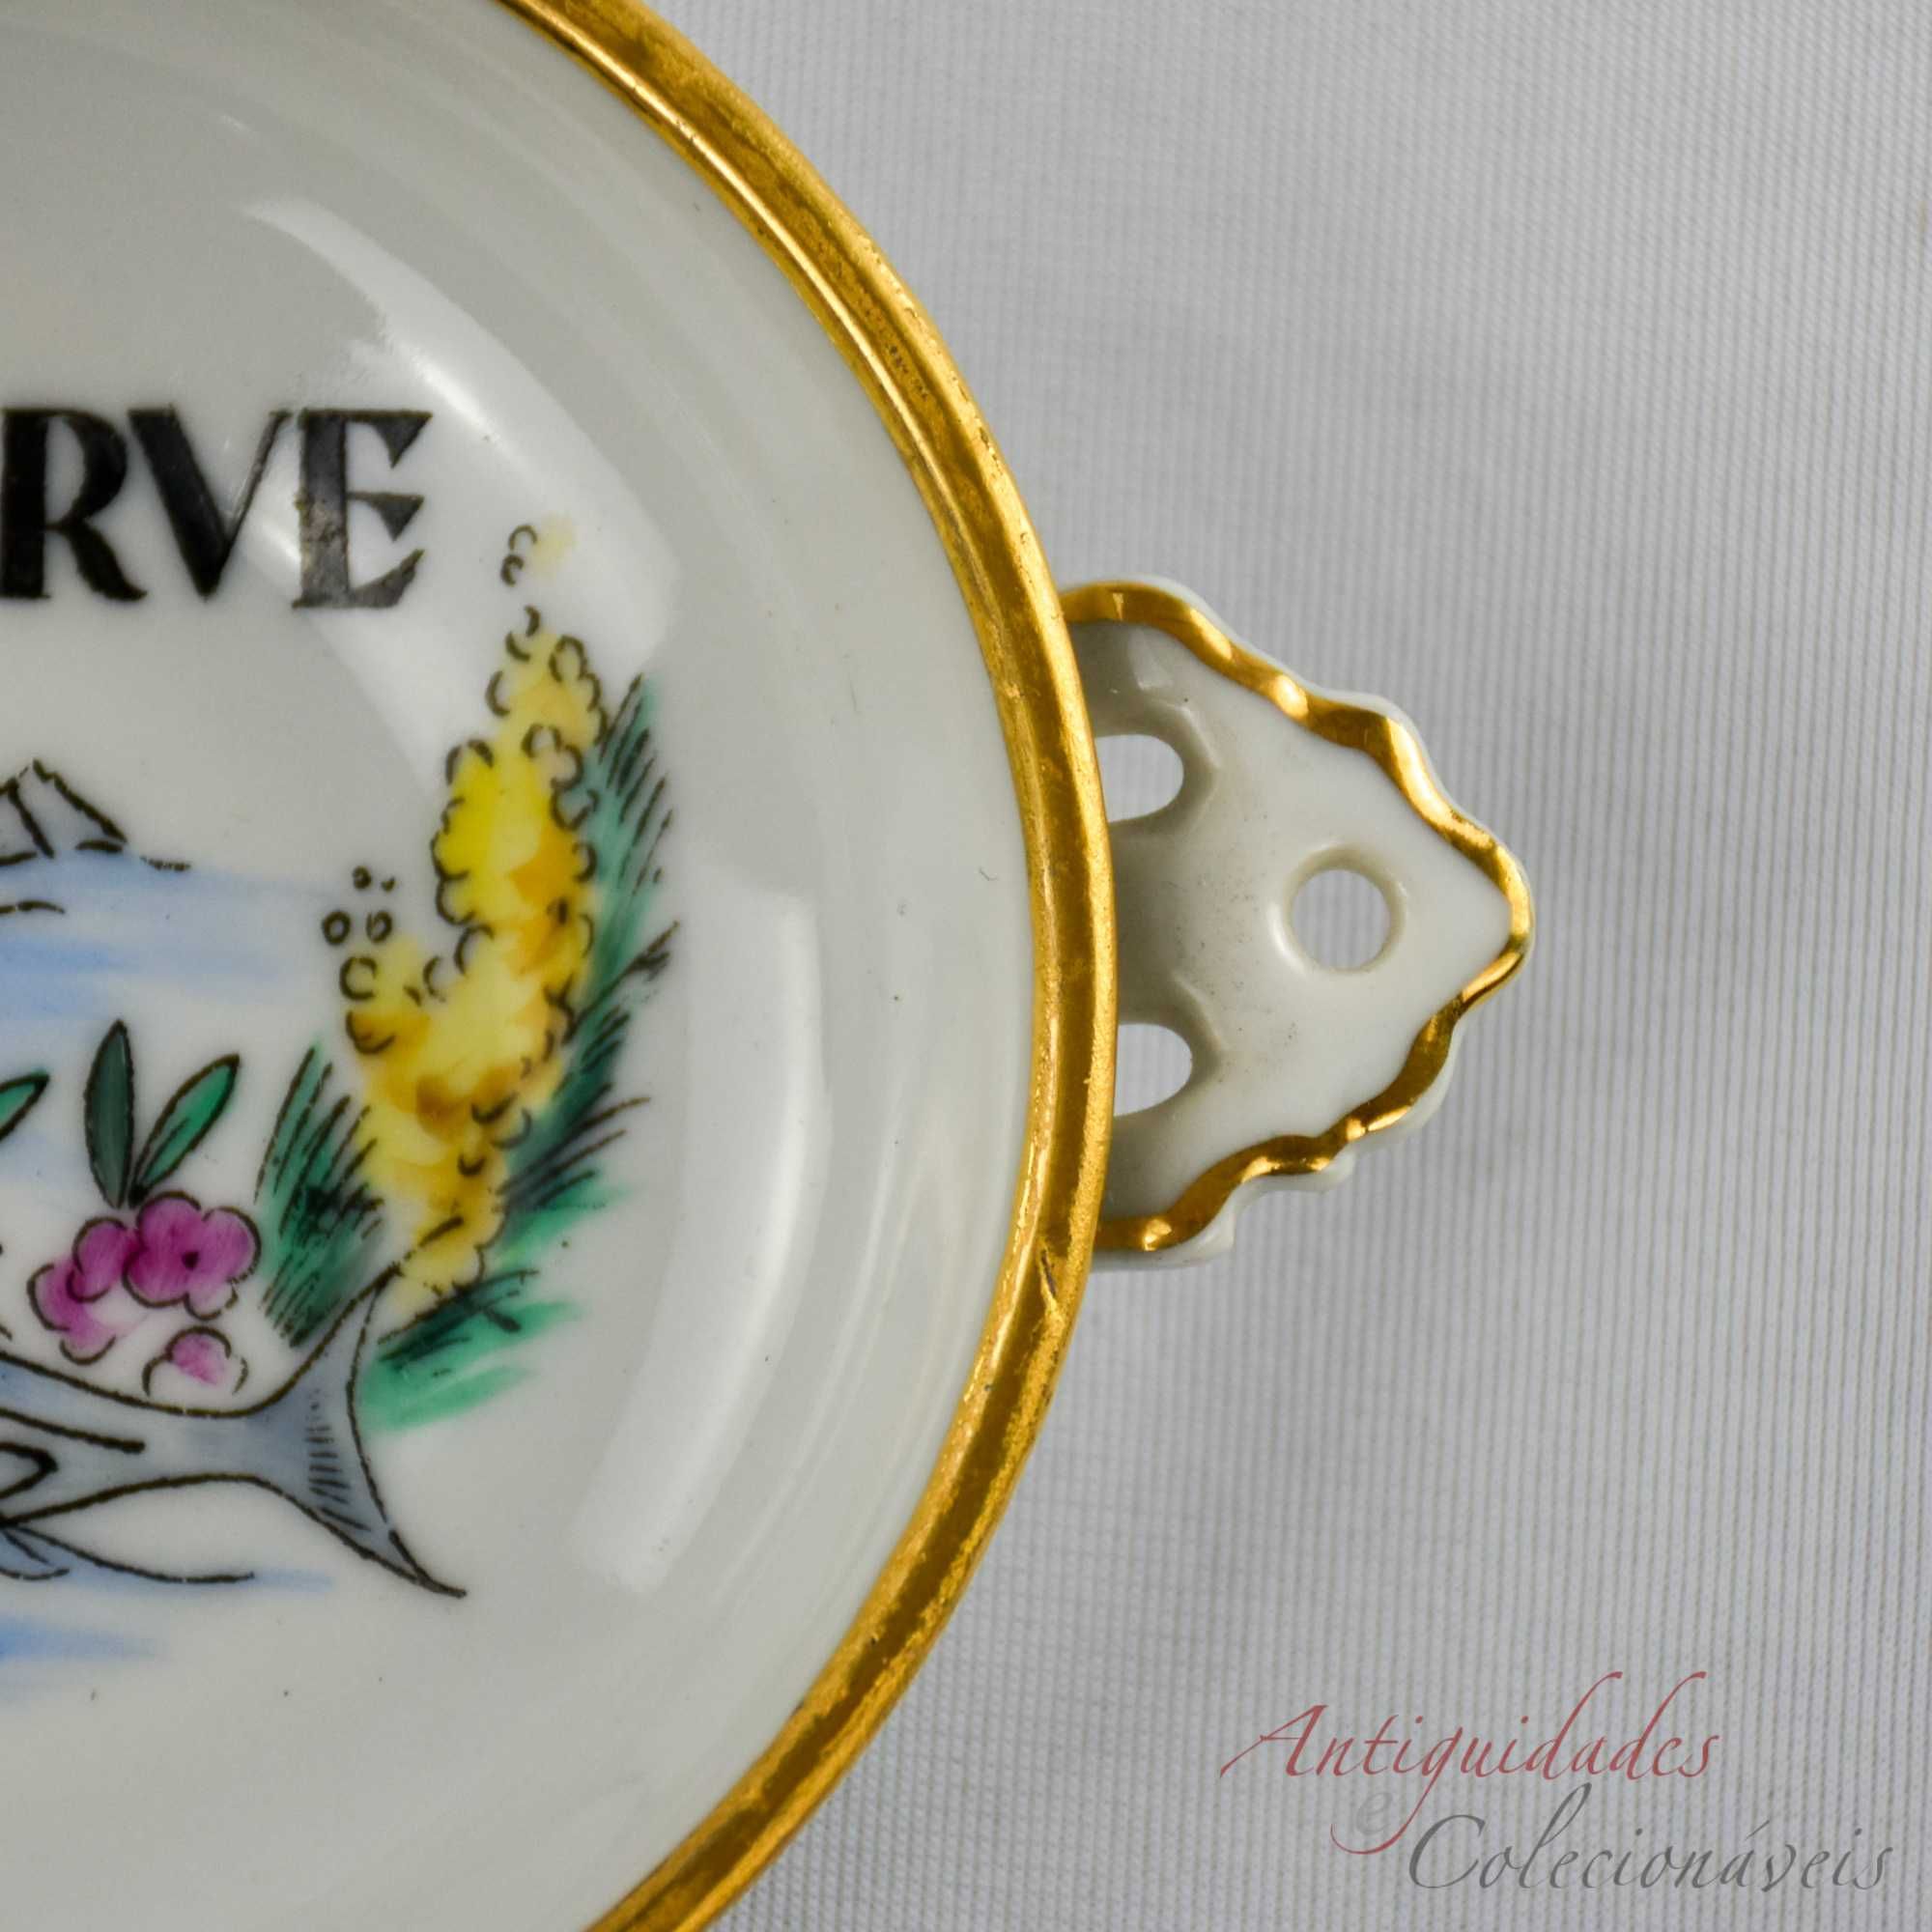 Pequena Taça com 2 pegas Porcelana Artibus alusiva ao “Algarve”